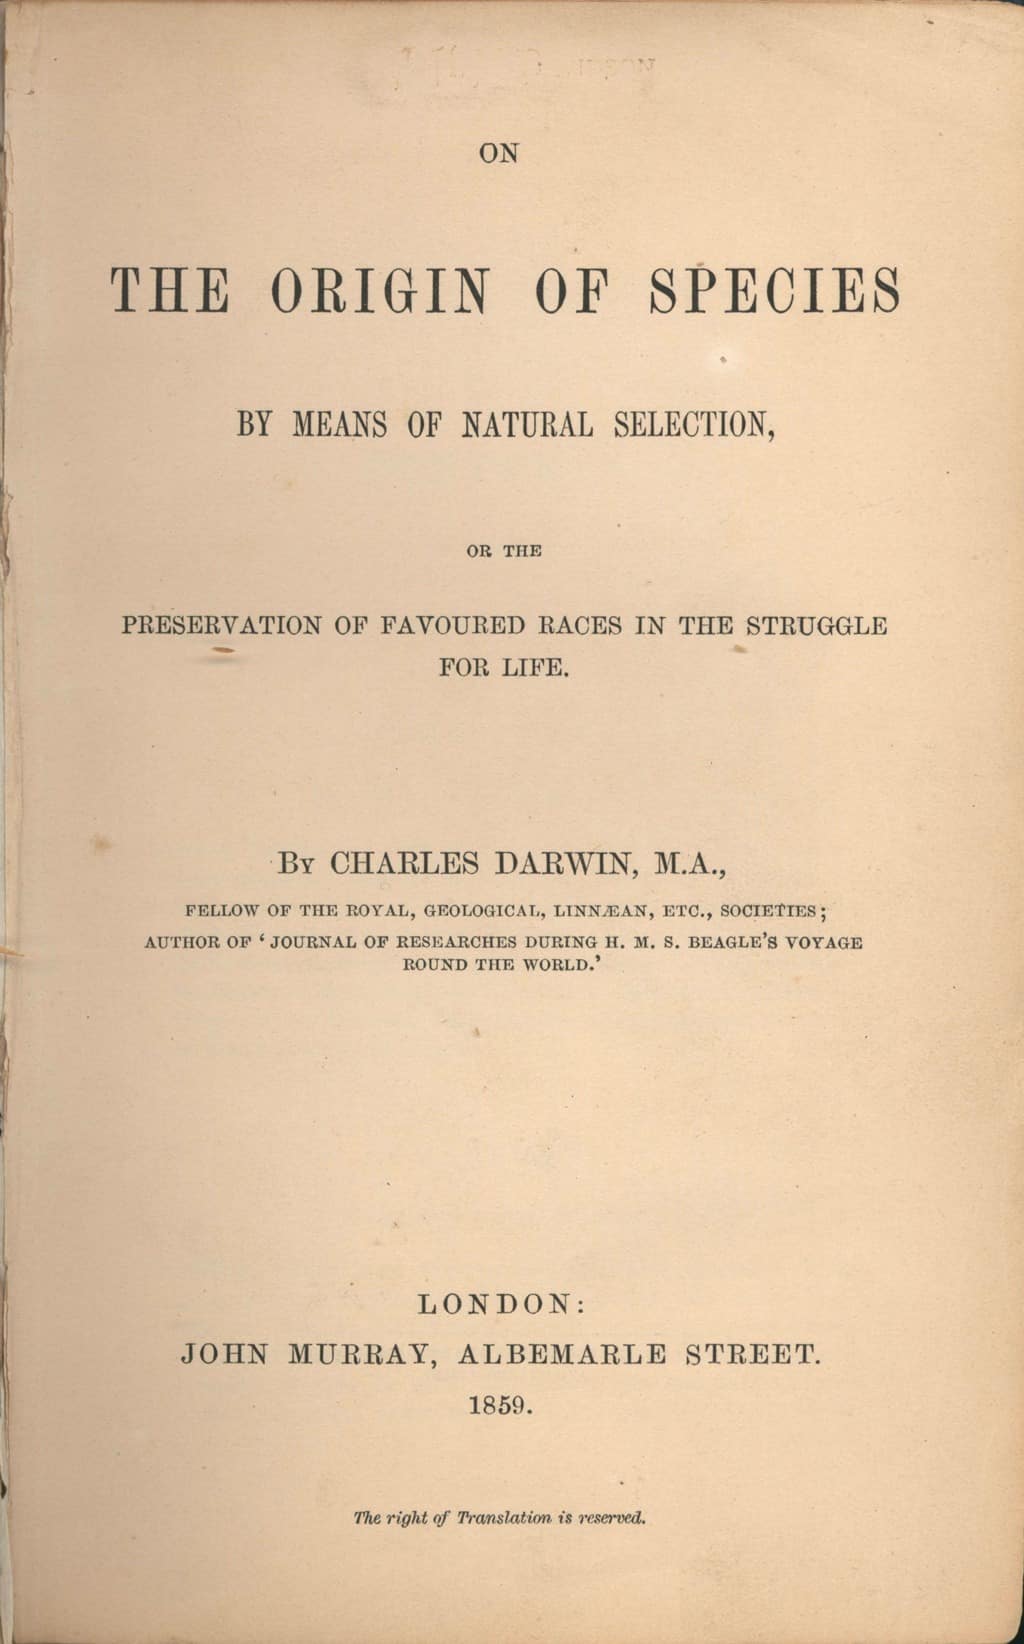 ظهرت أعمال (داروين) الثورية في المجال العلمي بعنوان «في أصل الأنواع» أول مرة في سنة 1859. صورة: Wikimedia Commons